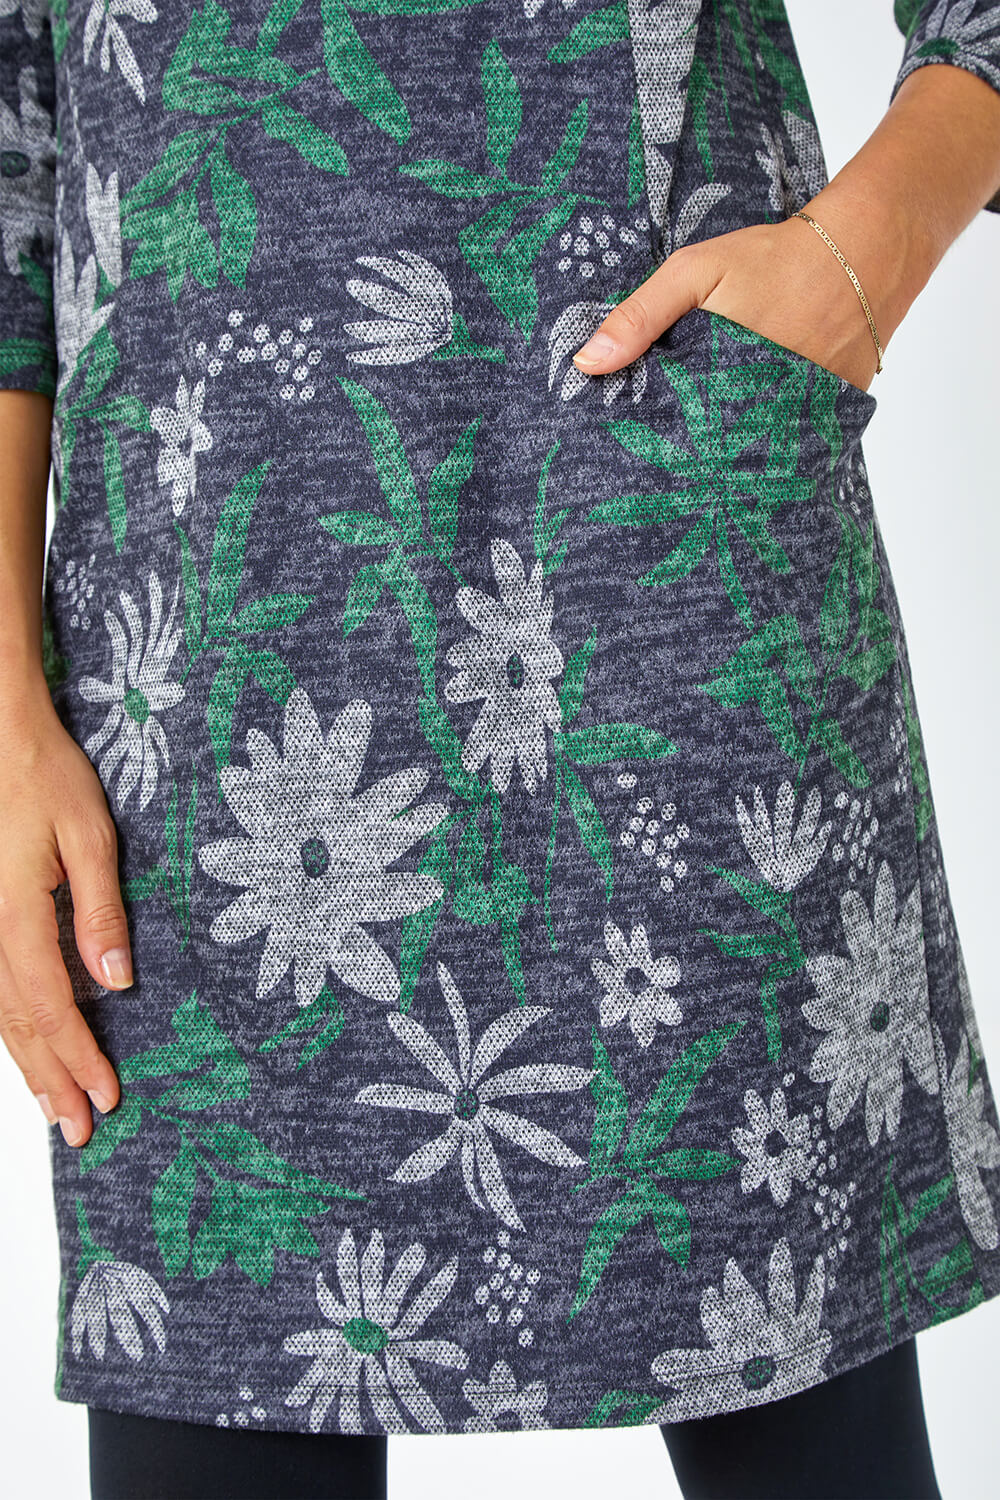 Green Floral Pocket Stretch Shift Dress, Image 5 of 5